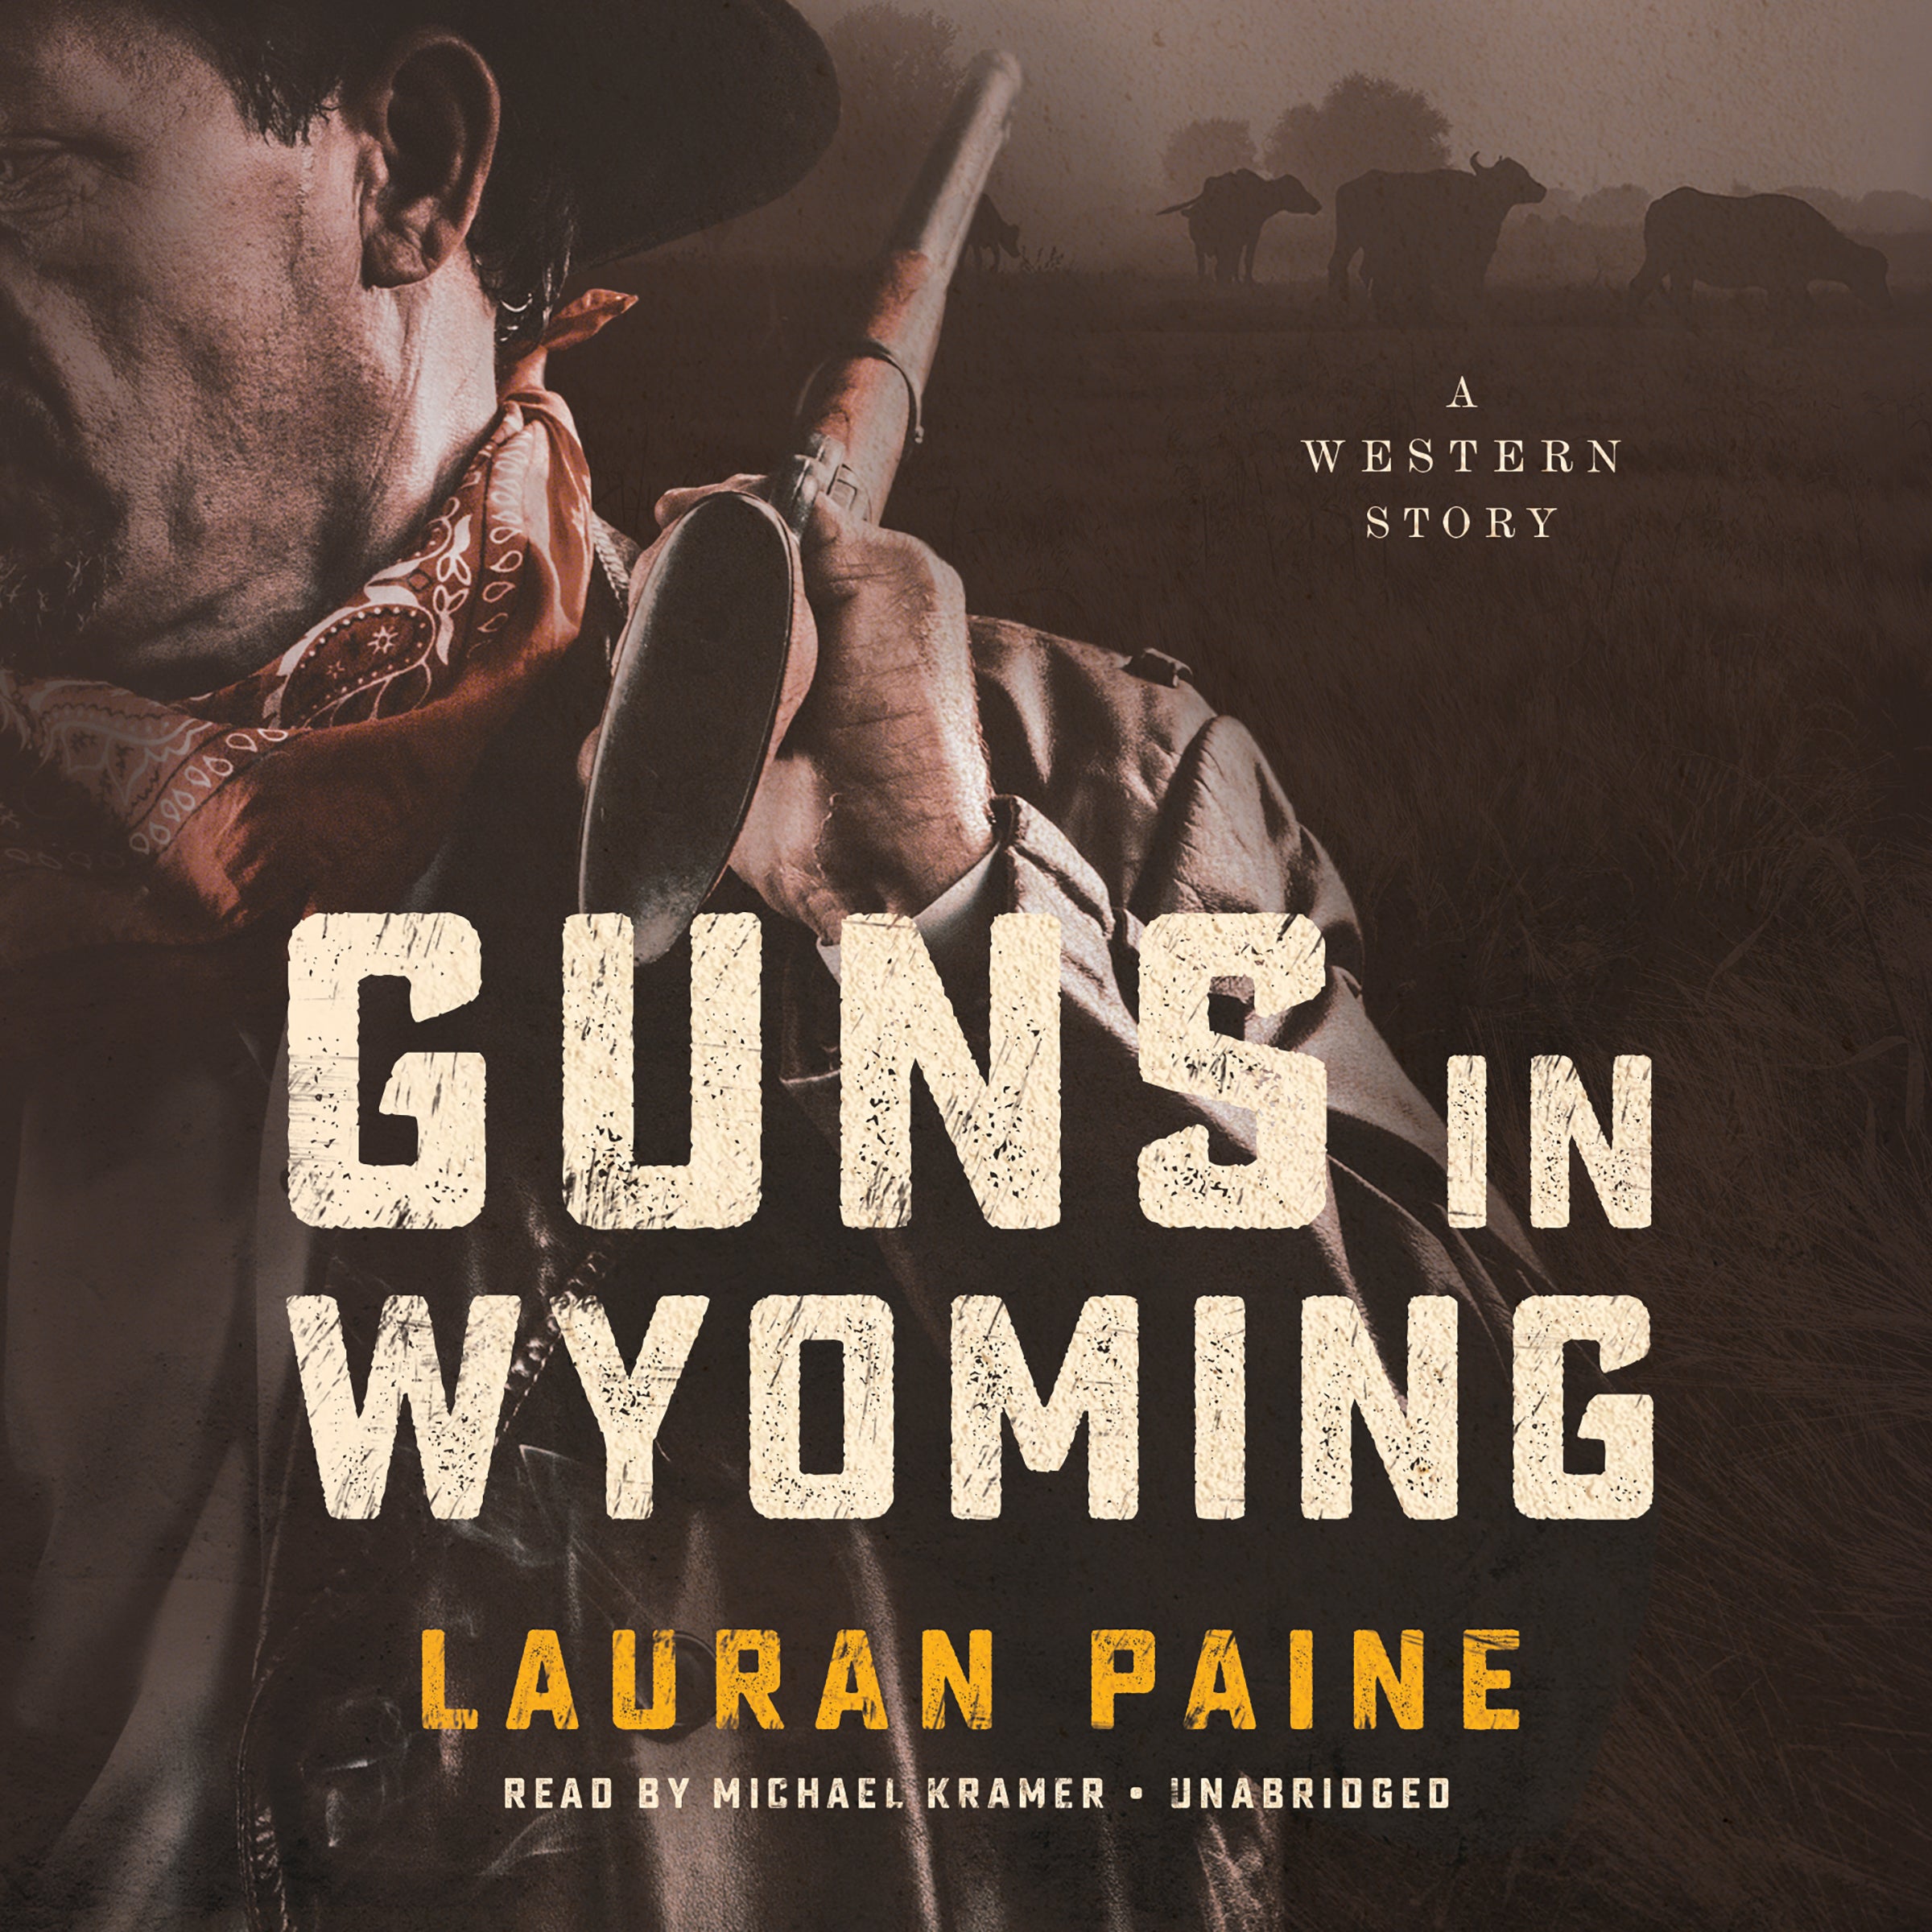 Guns in Wyoming